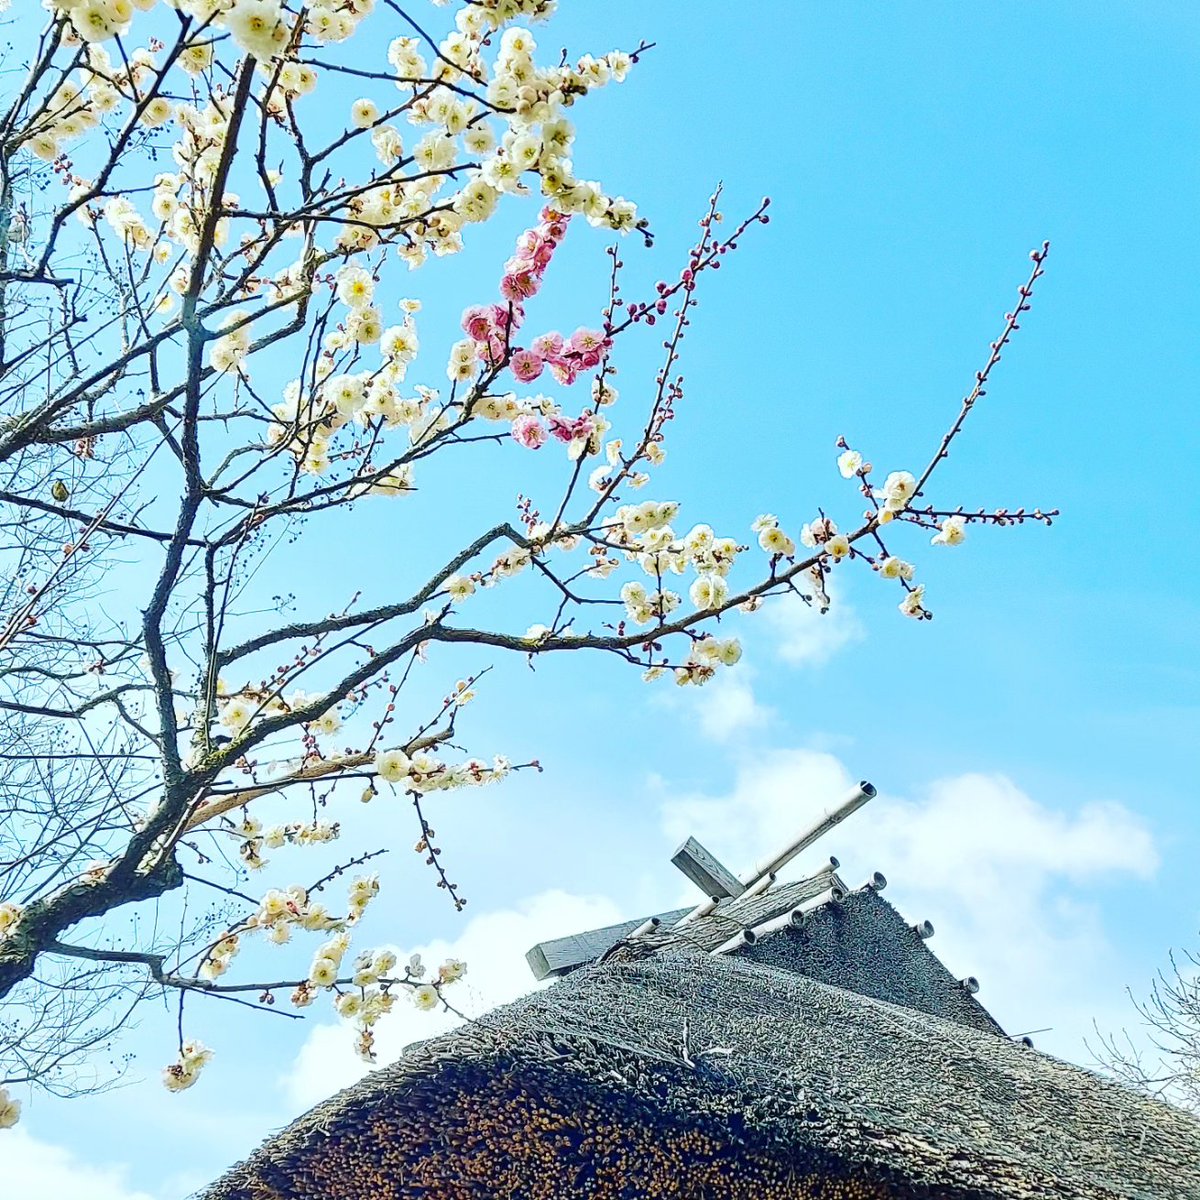 好古園の盆梅は花が散り始め、見ごろを過ぎてしまいましたが、 地植えの梅はまだまだ見ごろの木があります。 本日はウメの｢源平咲き｣をご紹介。 いま、好古園の築山池泉の庭で｢源平咲き｣を見ることができますので、ぜひ見に来てください！ #日本庭園　#姫路　#好古園　#ウメ　#源平咲き